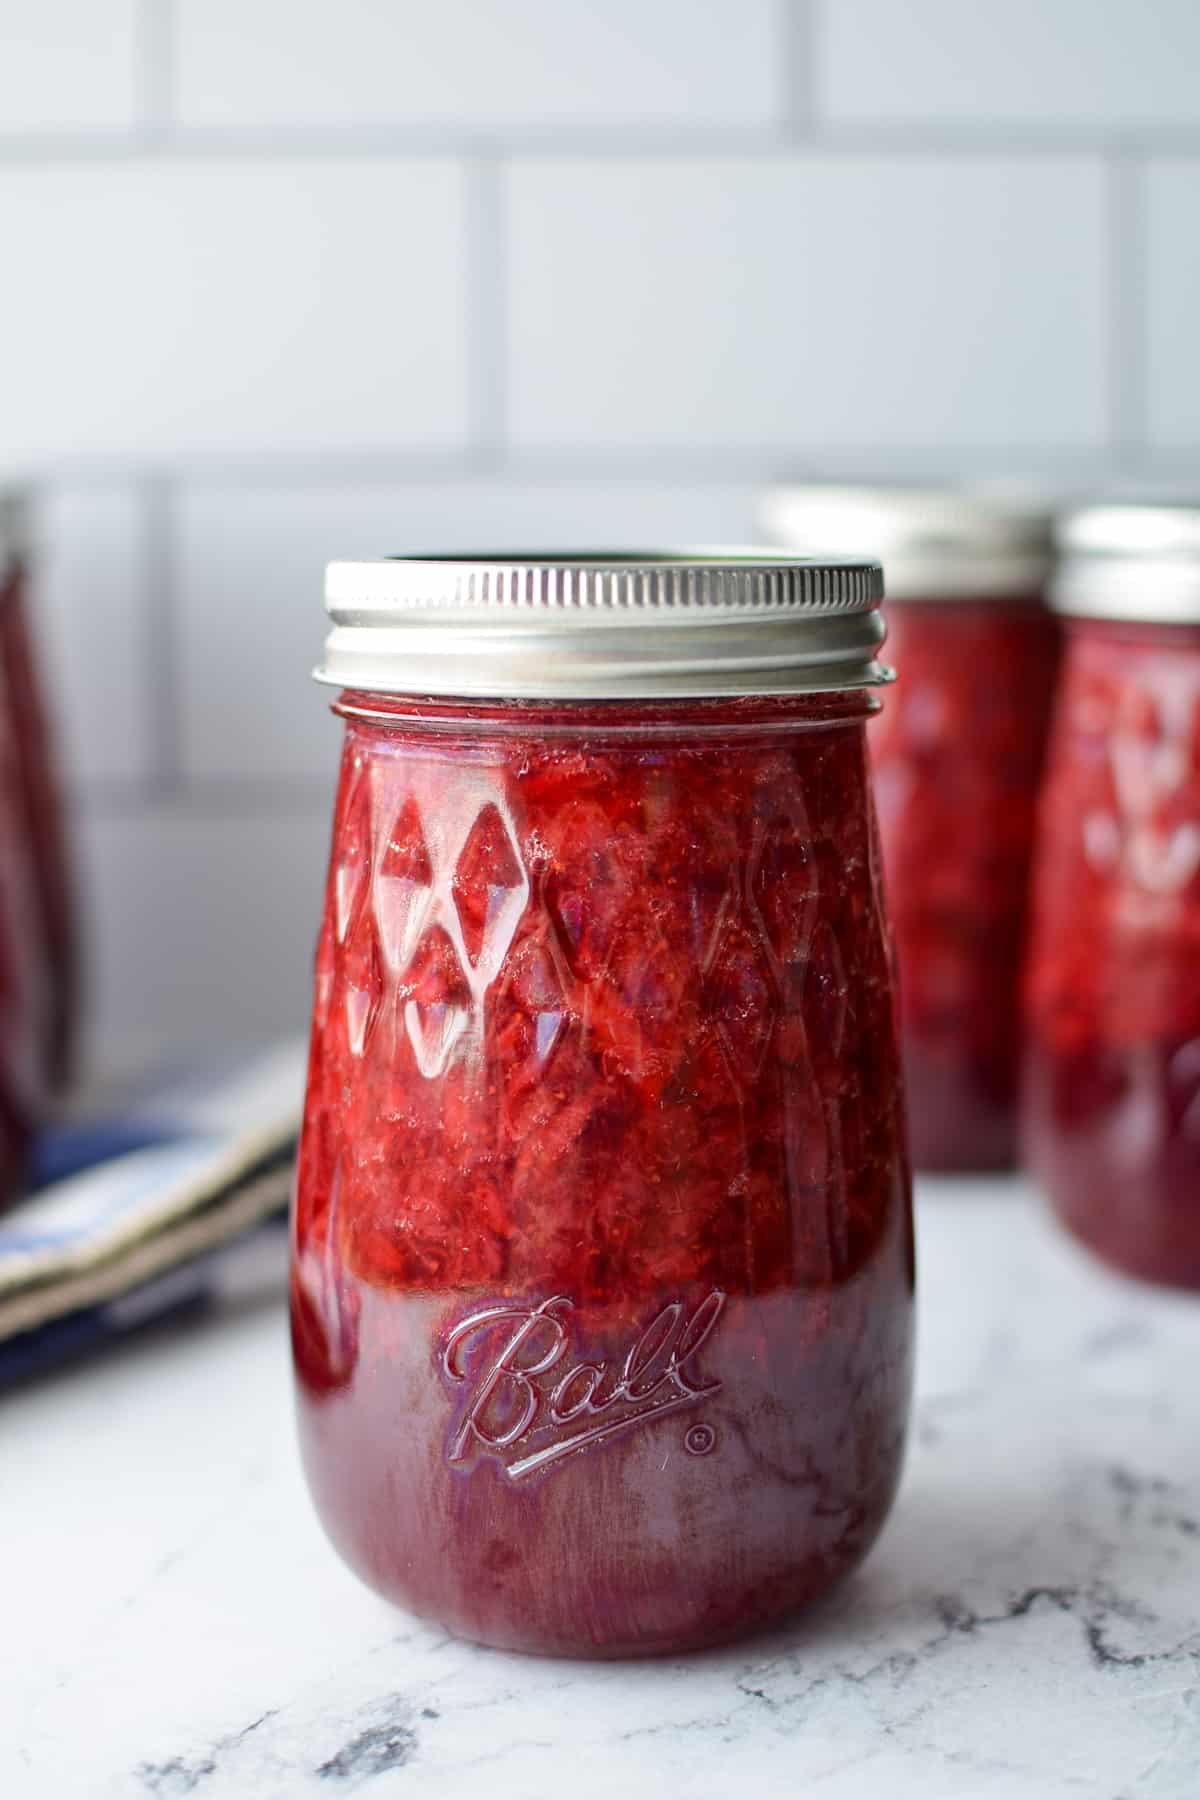 A close up of a jar of homemade strawberry jam.